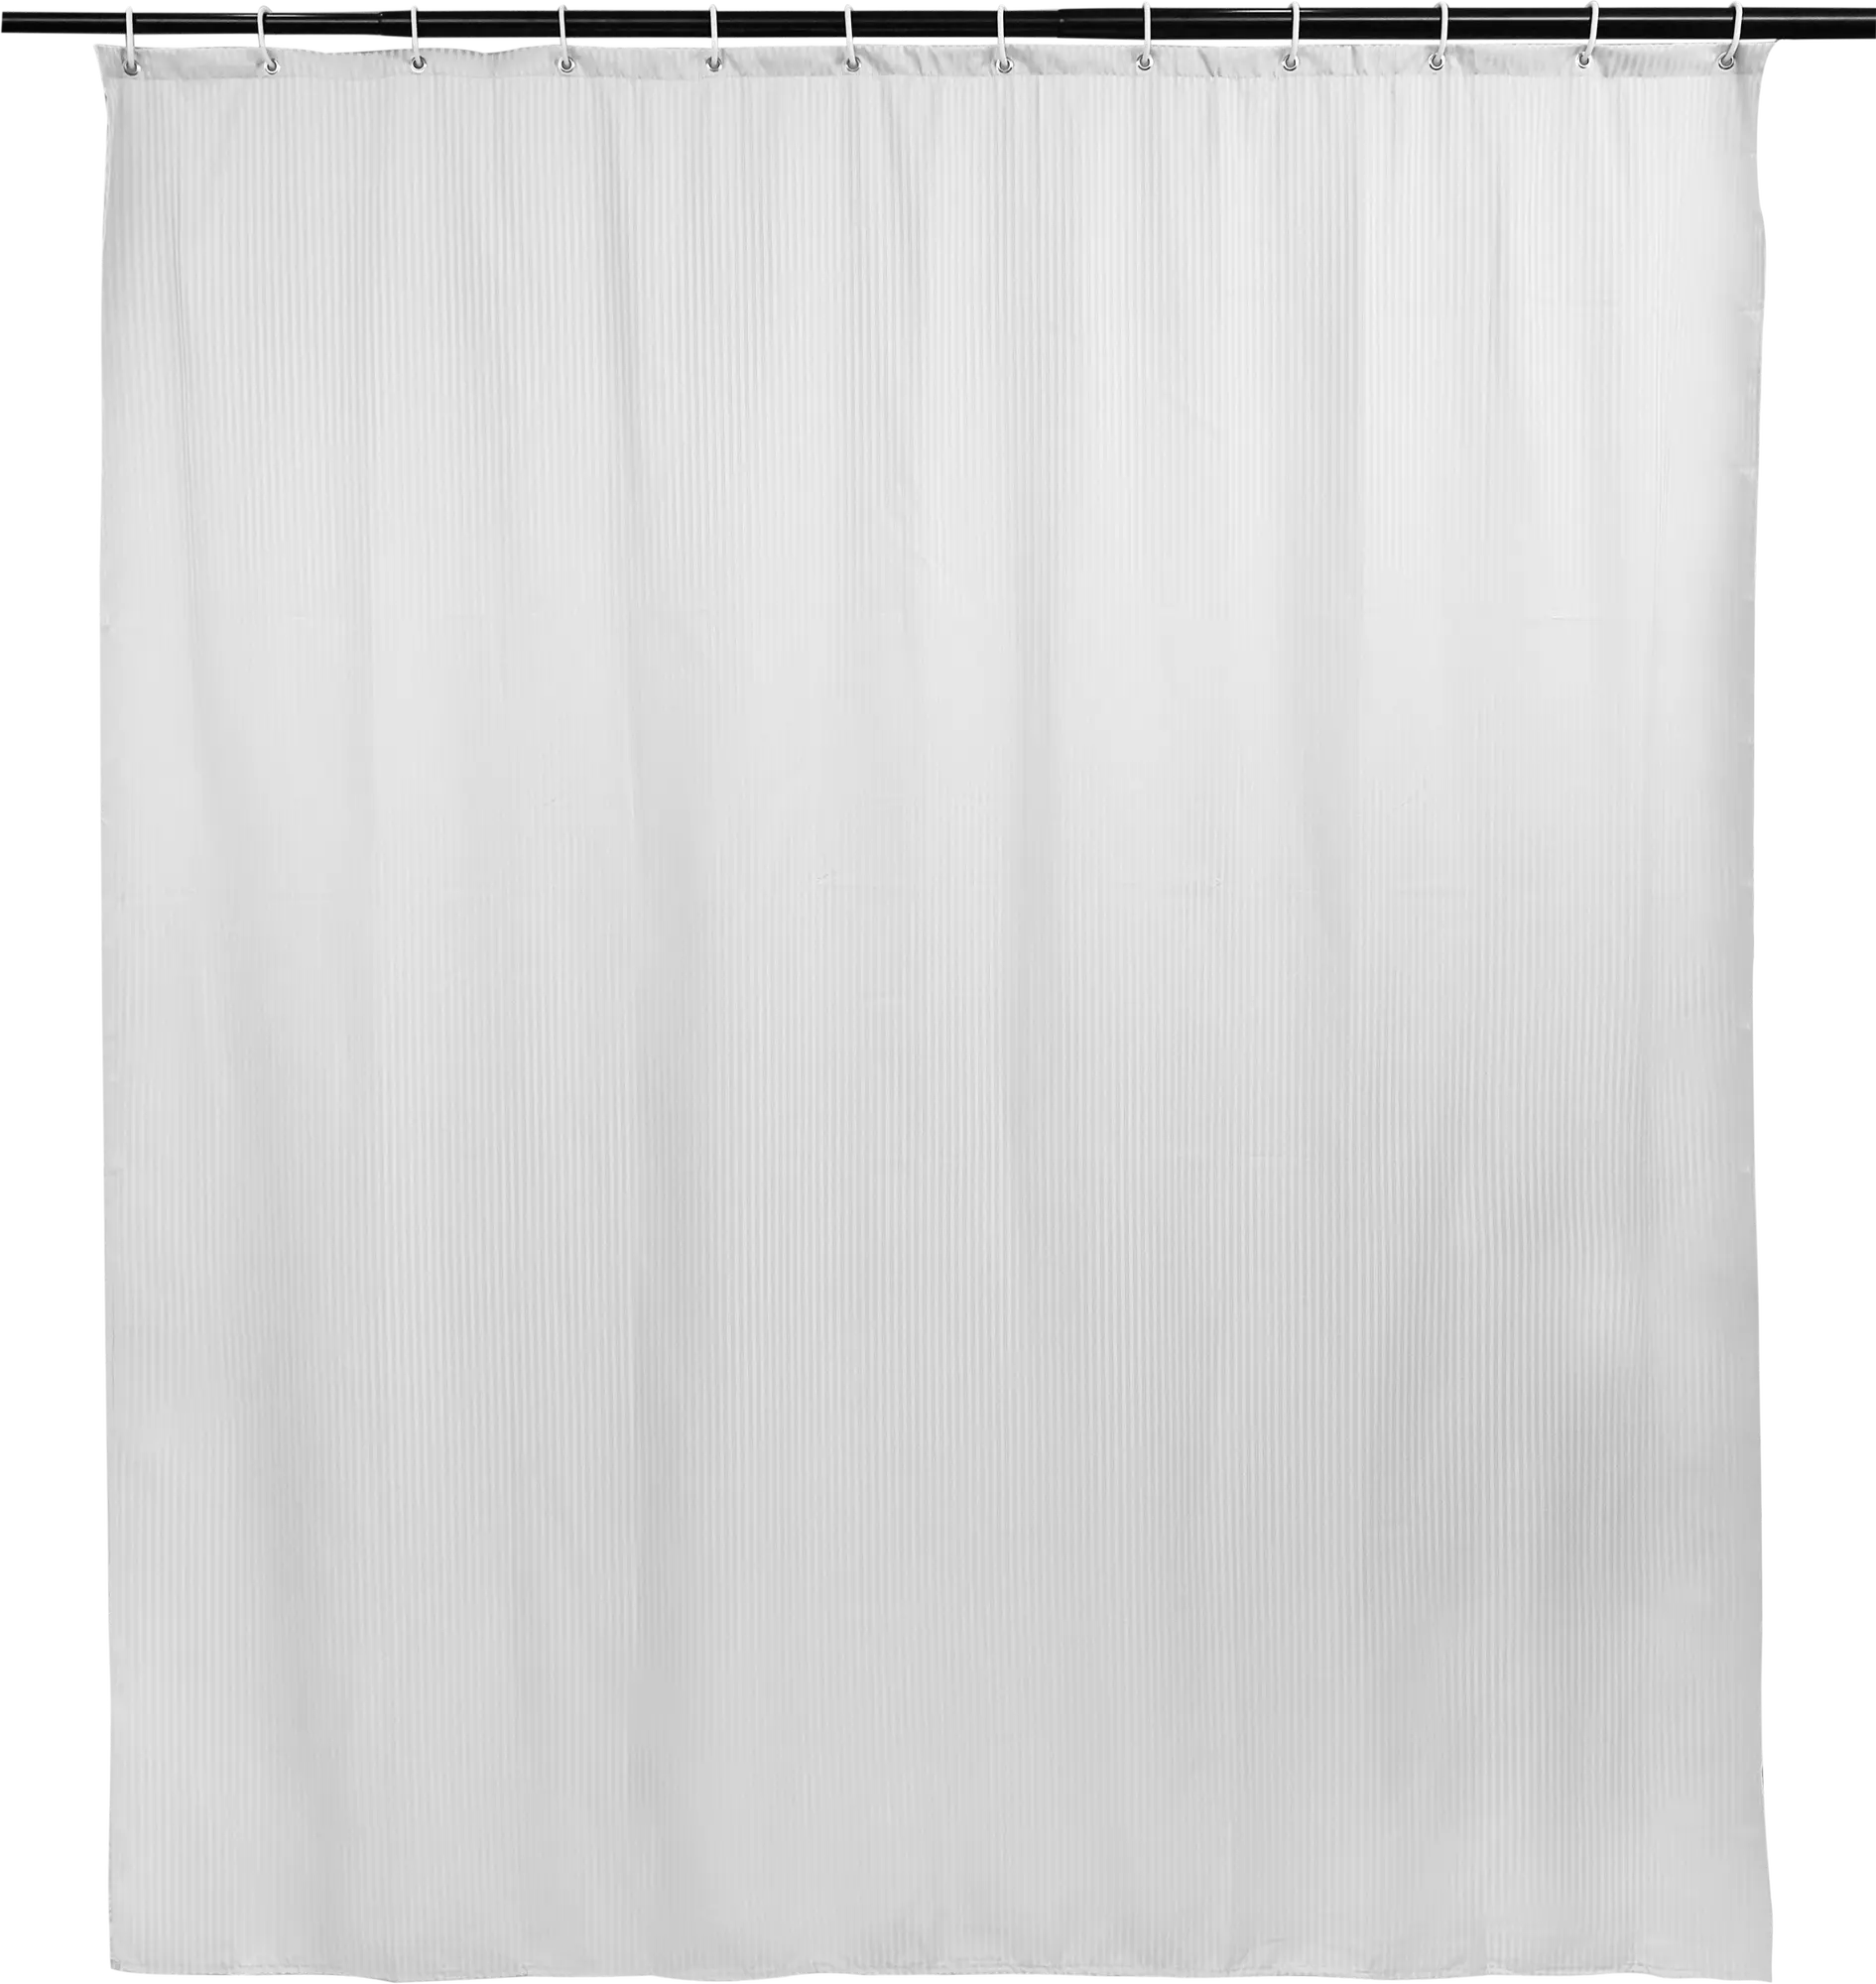 Cortina de Baño blanca tela lino-algodón, tamaño 180x200cm - Tienda Hohos